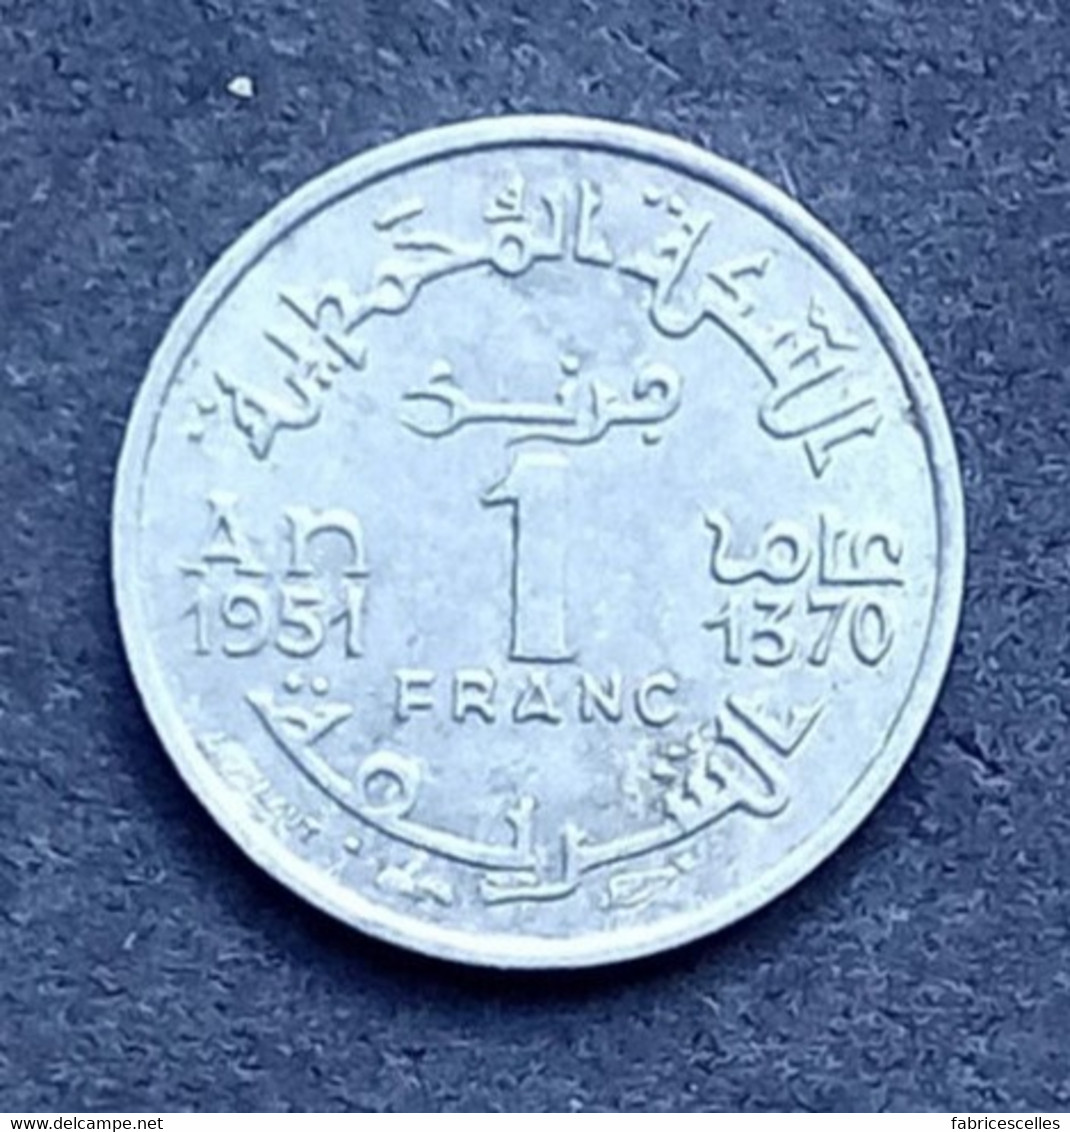 Maroc - Pièce De 1 Franc 1370 (1951),  Empire Chérifien - Marokko